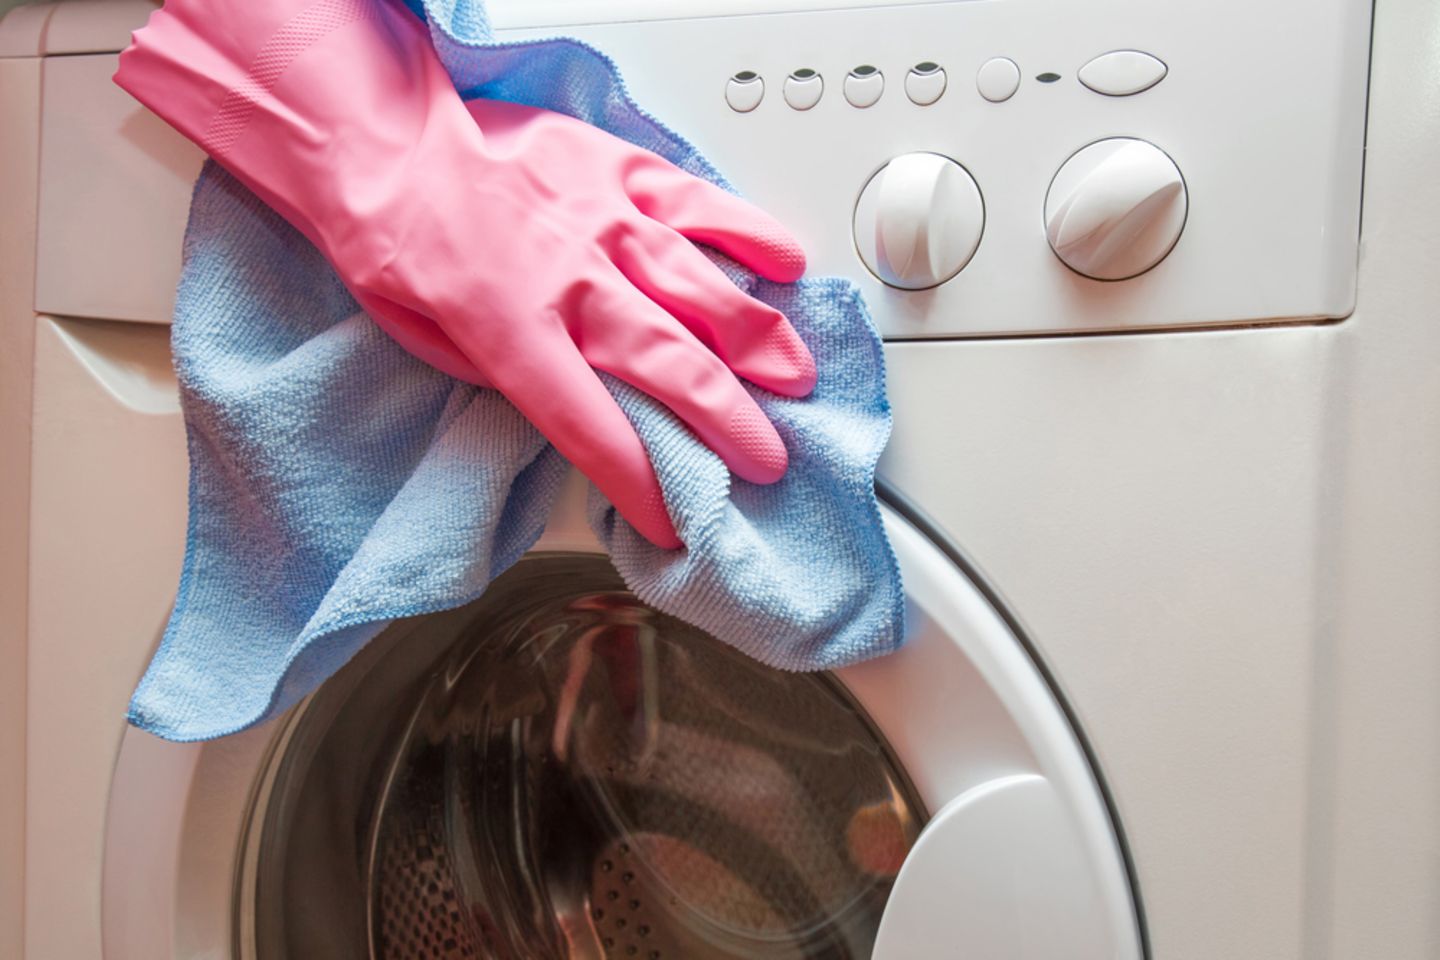 Lederkombi waschen reinigen - Ab damit in die Waschmaschine?